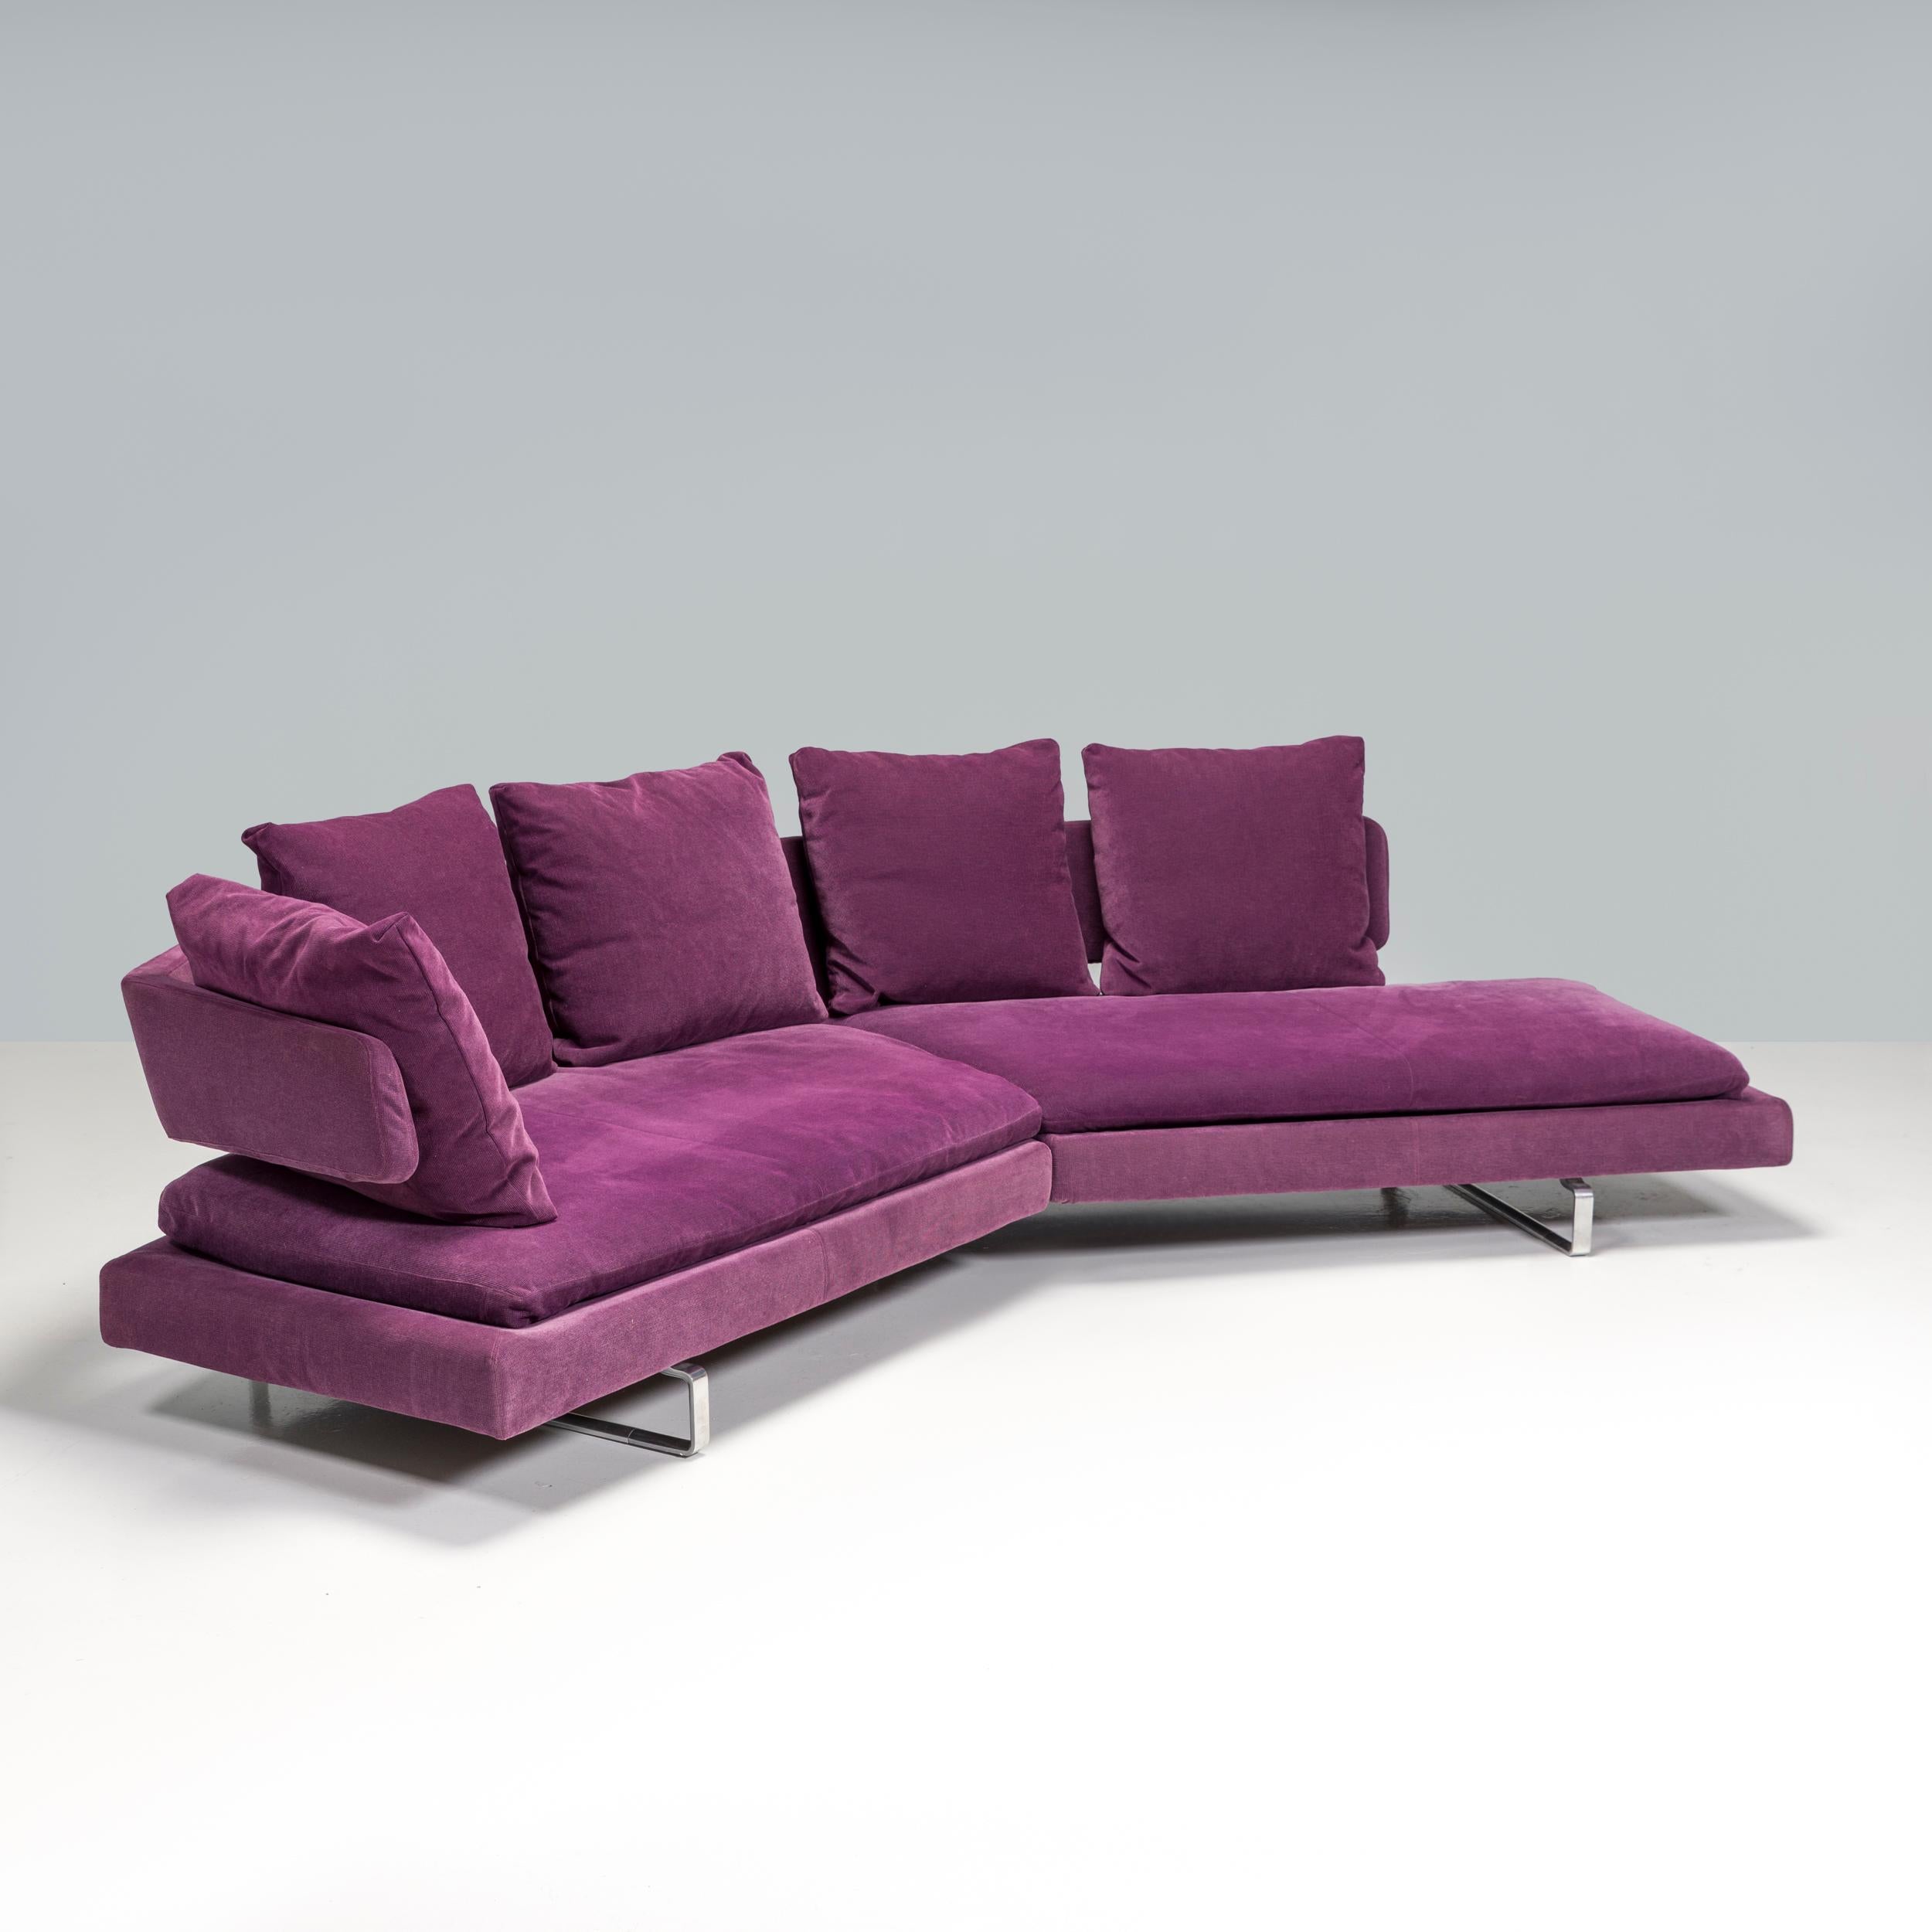 Conçu à l'origine par Antonio Citterio en 2005 et fabriqué par B&B Italia, le canapé Arne est un exemple fantastique de design moderne. 

Équilibrant parfaitement les courbes et les lignes droites élégantes, le canapé est doté d'une plate-forme